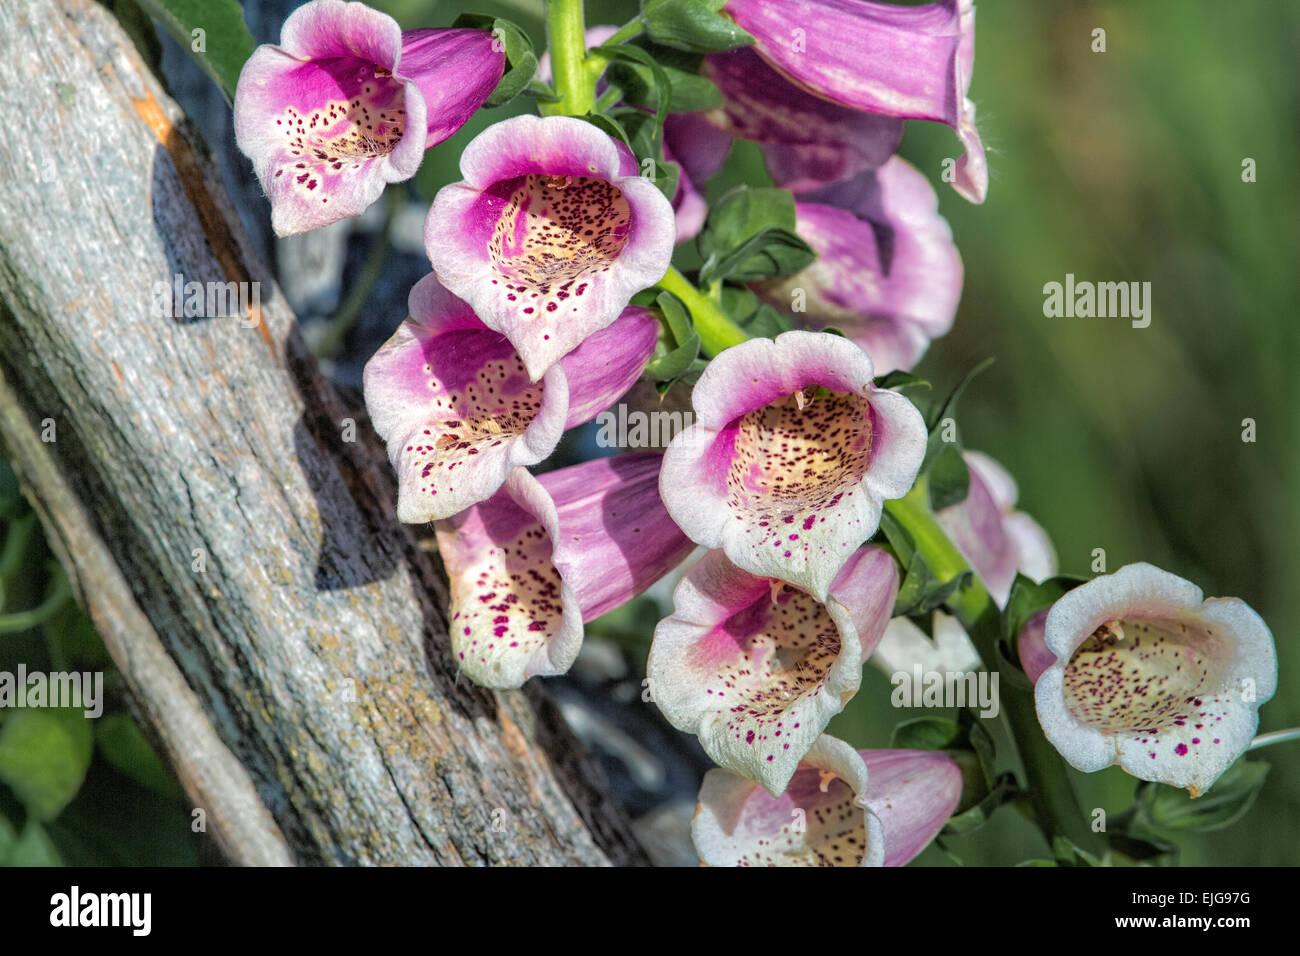 Foxglove - Digitalis purpurea Stock Photo